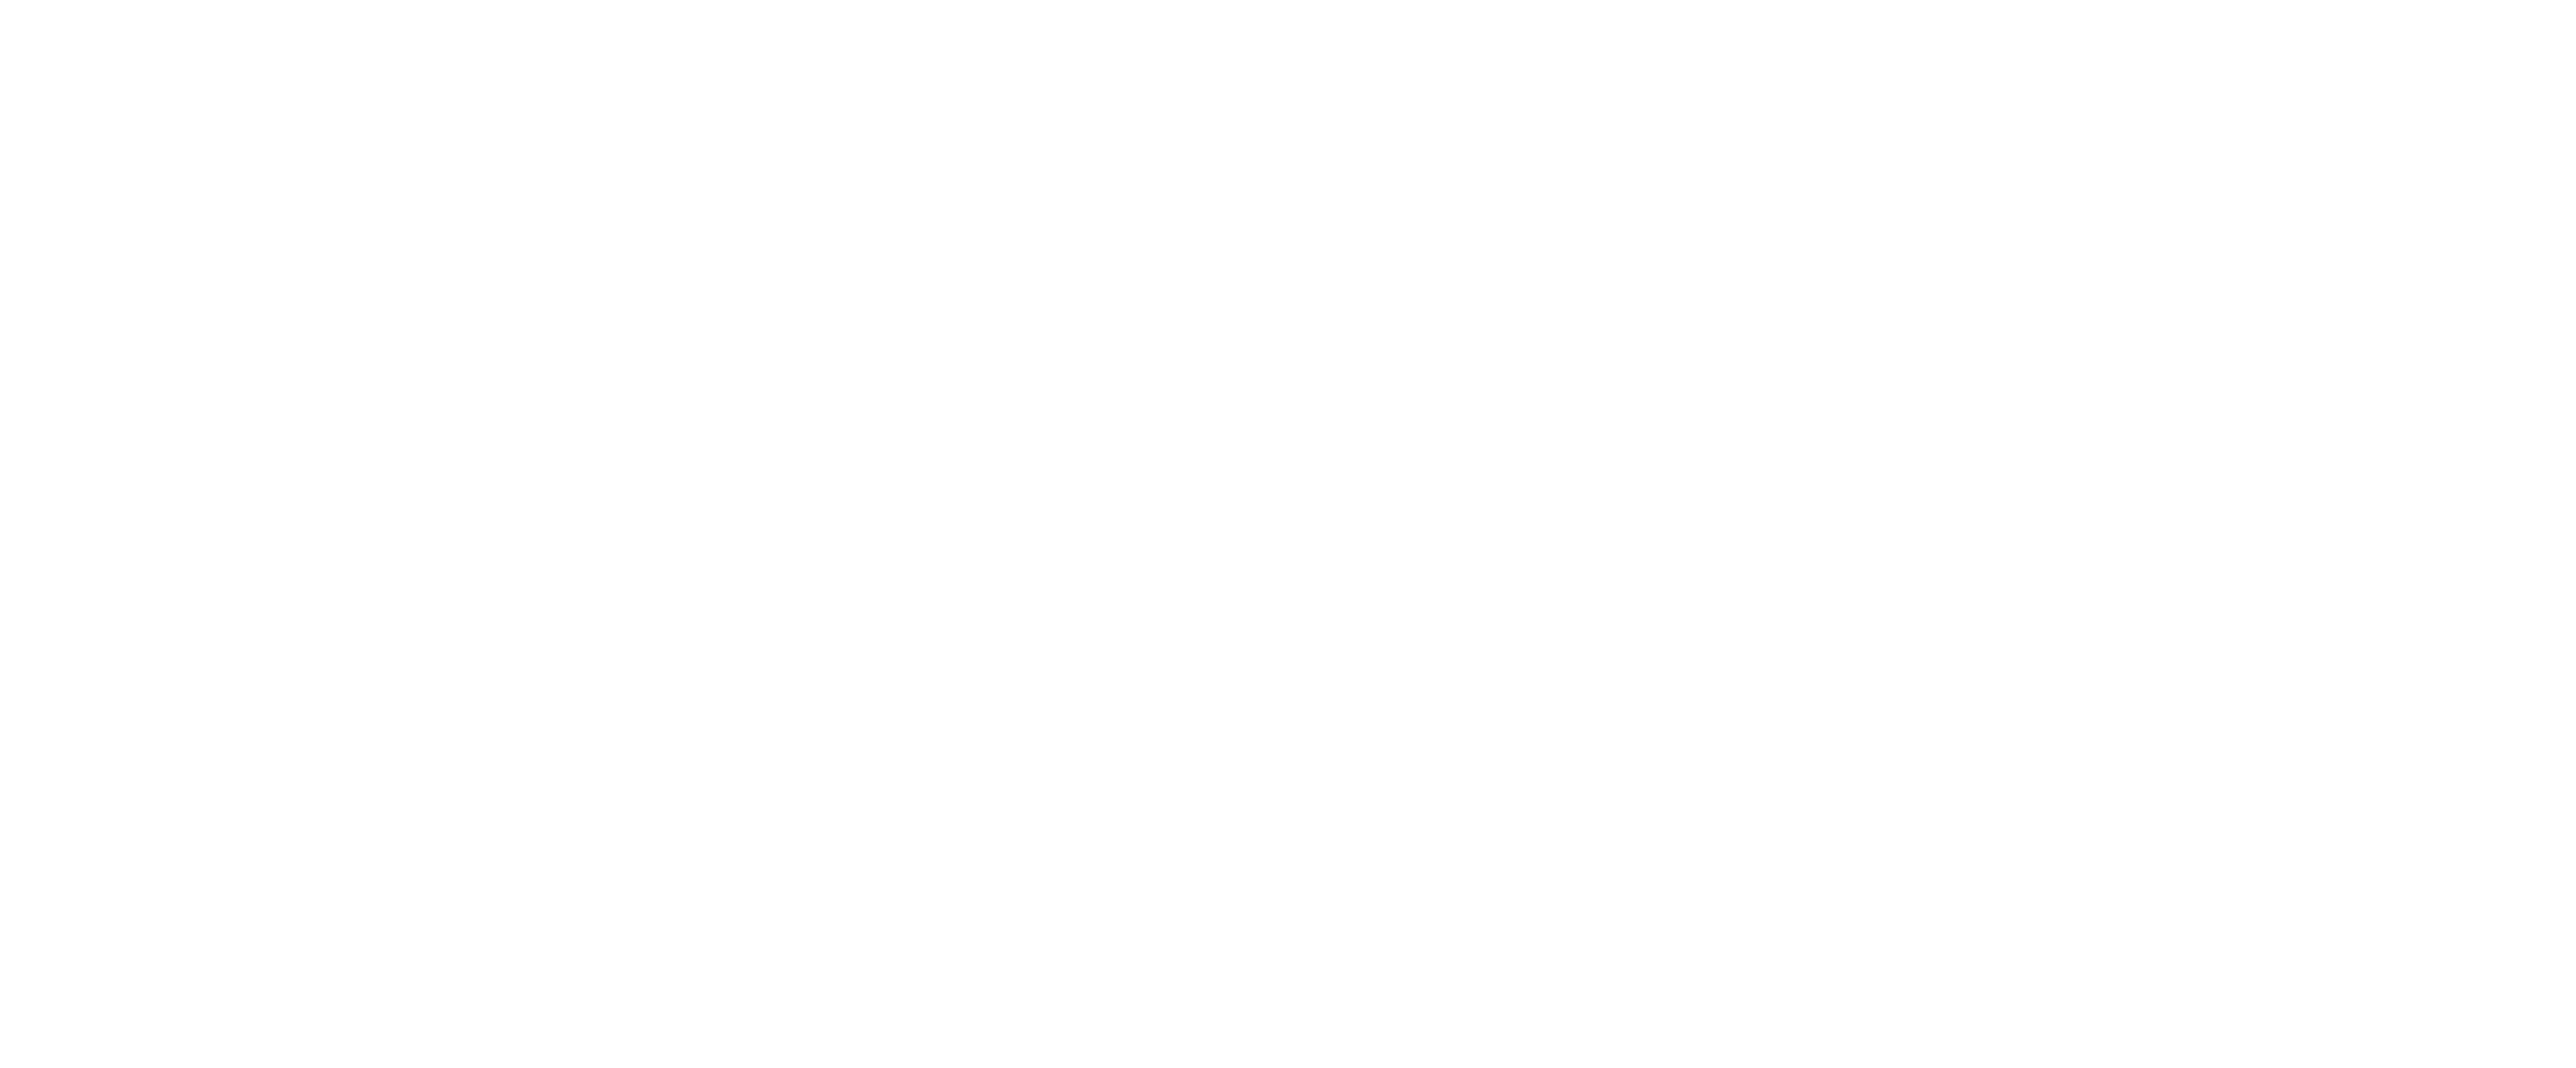 0 60 44. CAA logo.